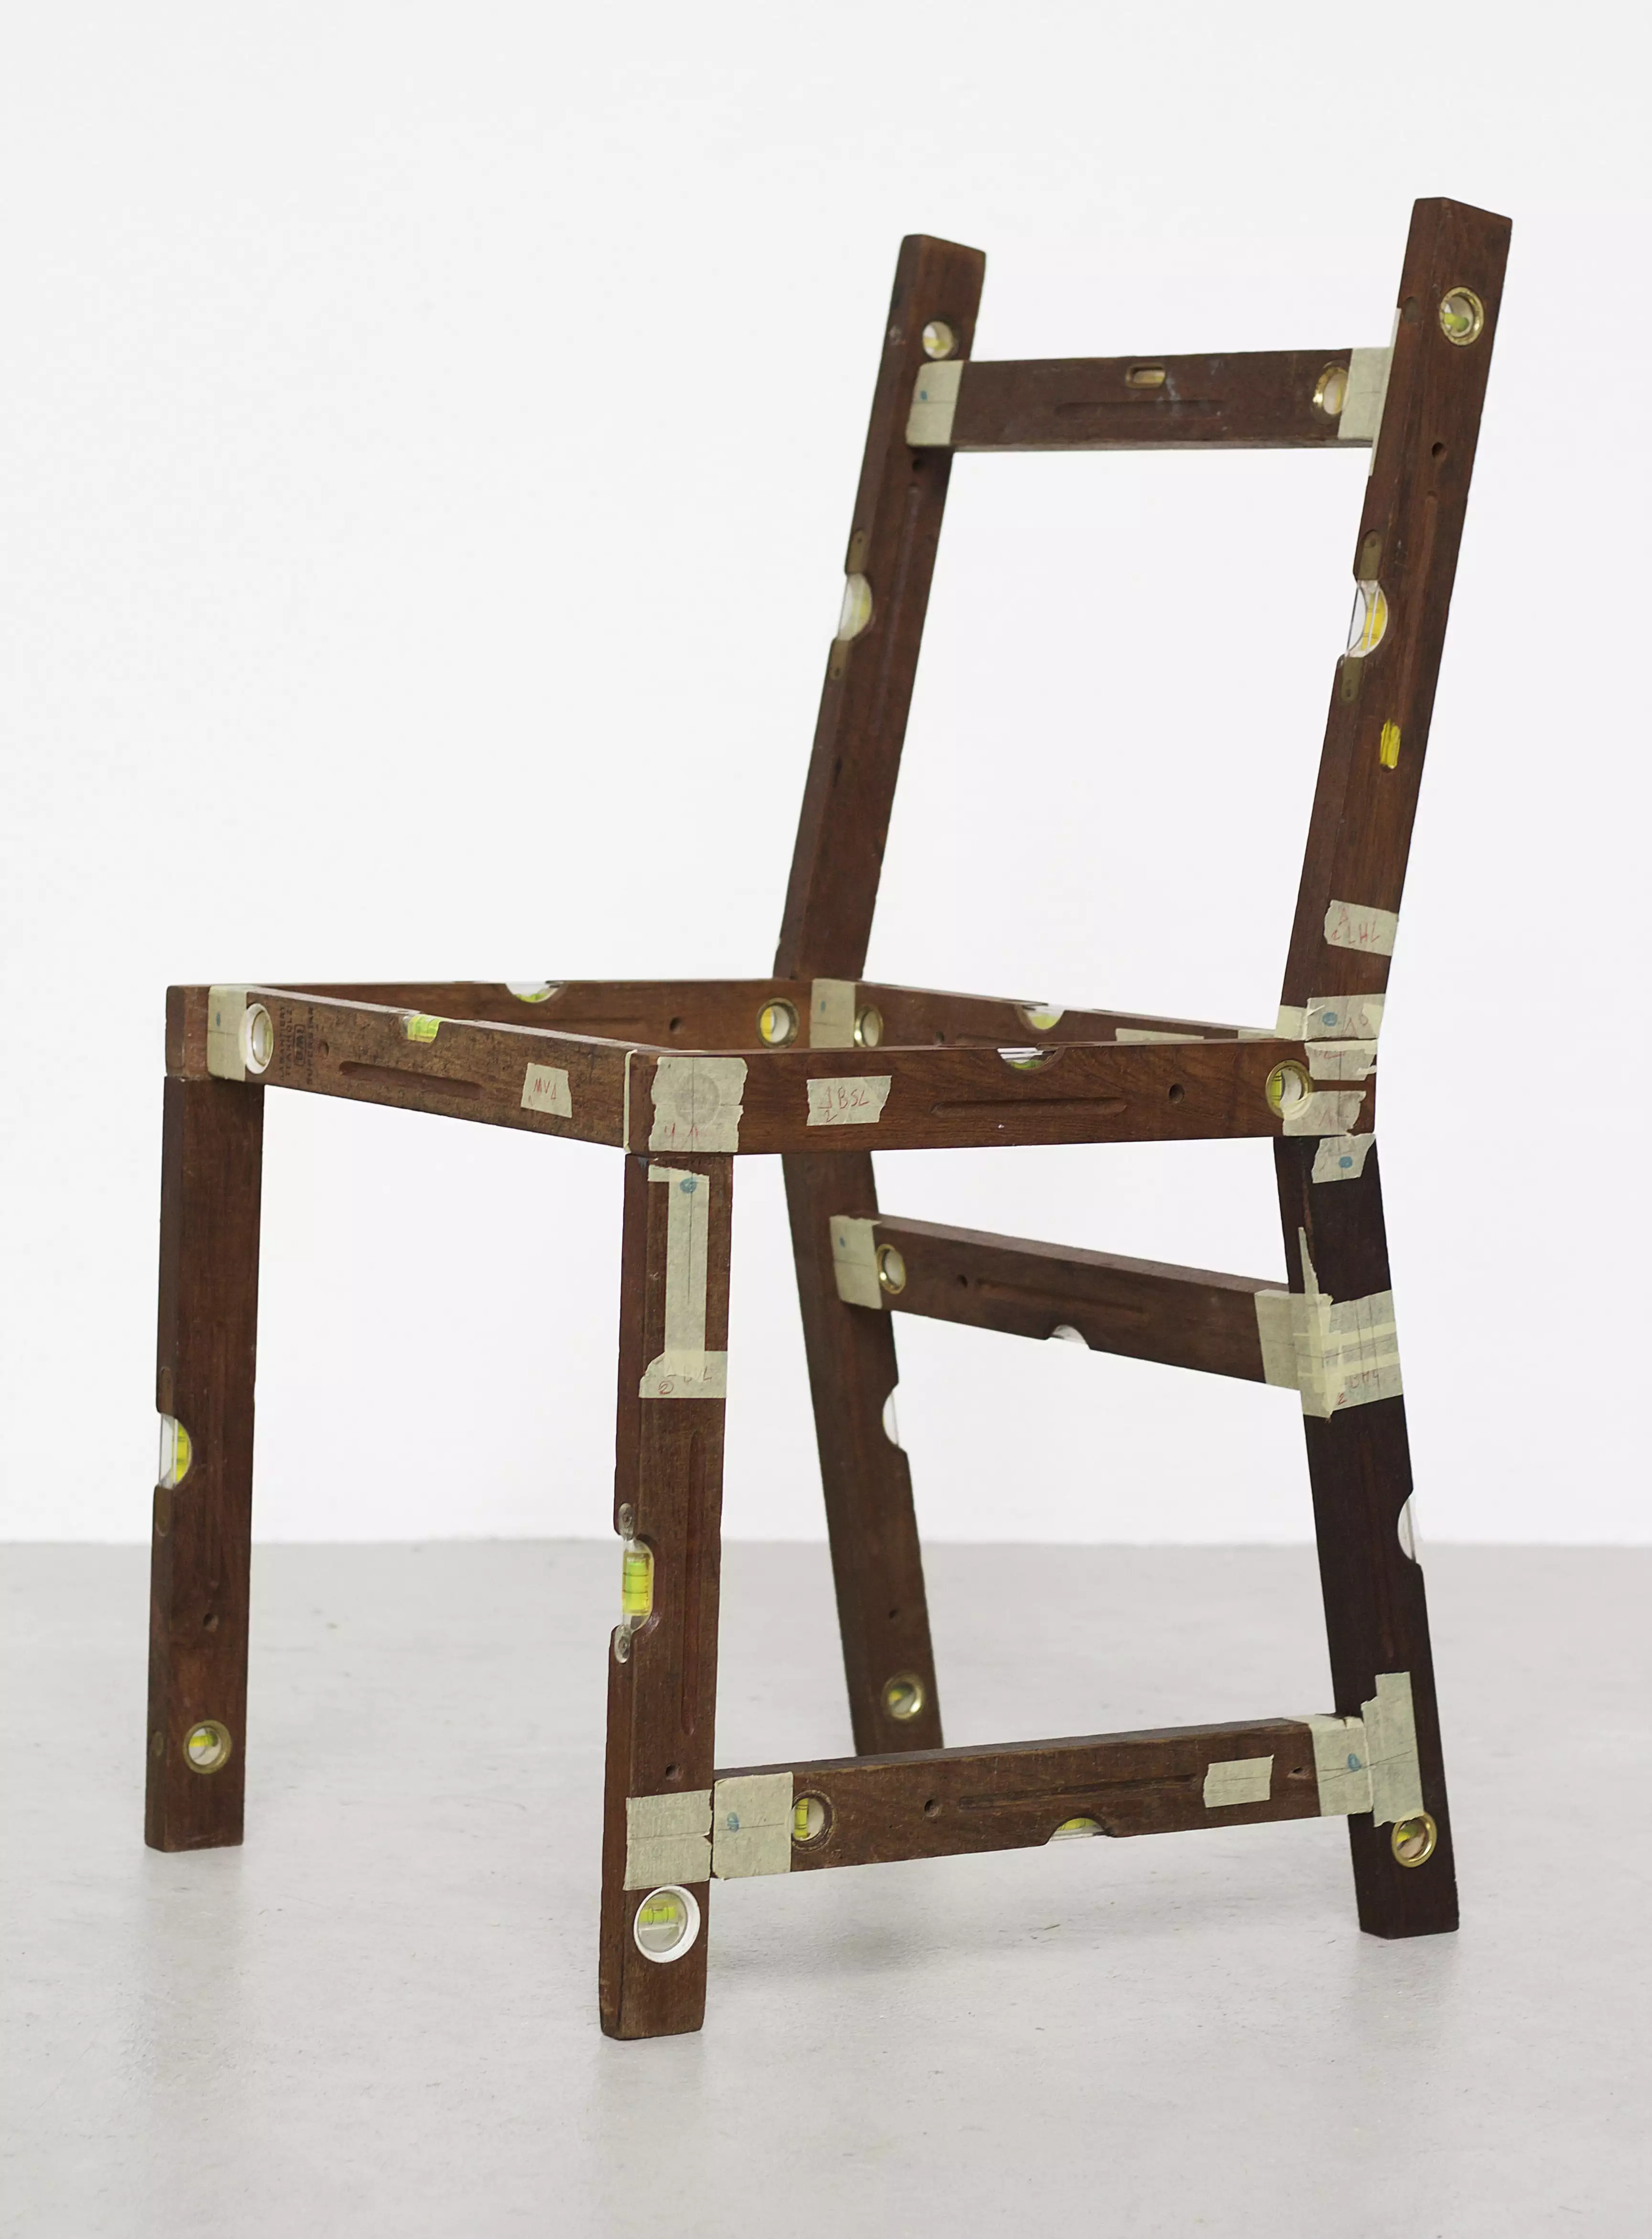 A Chair for Architekten (3)